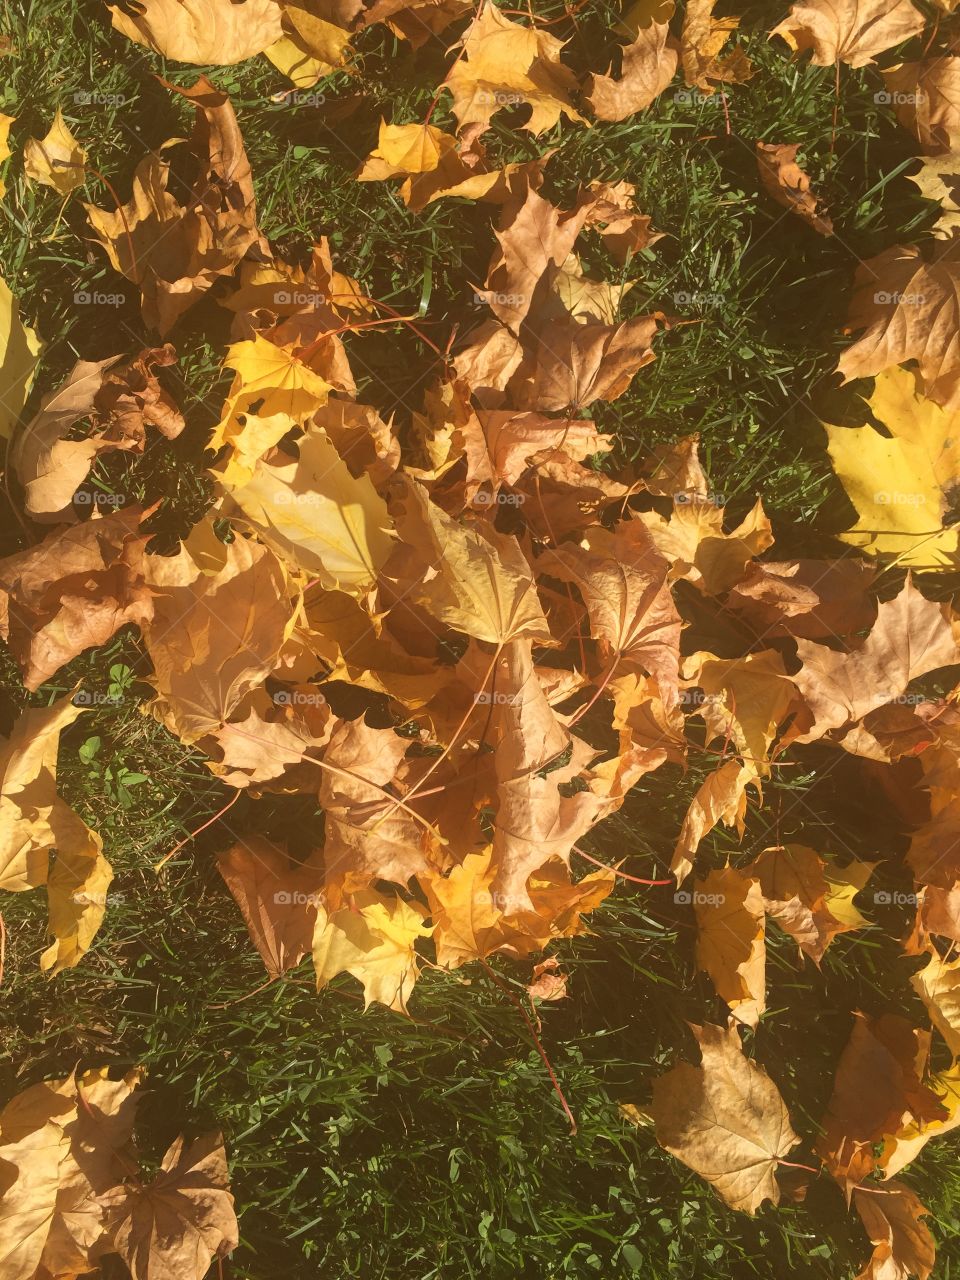 Pre-fall leaves